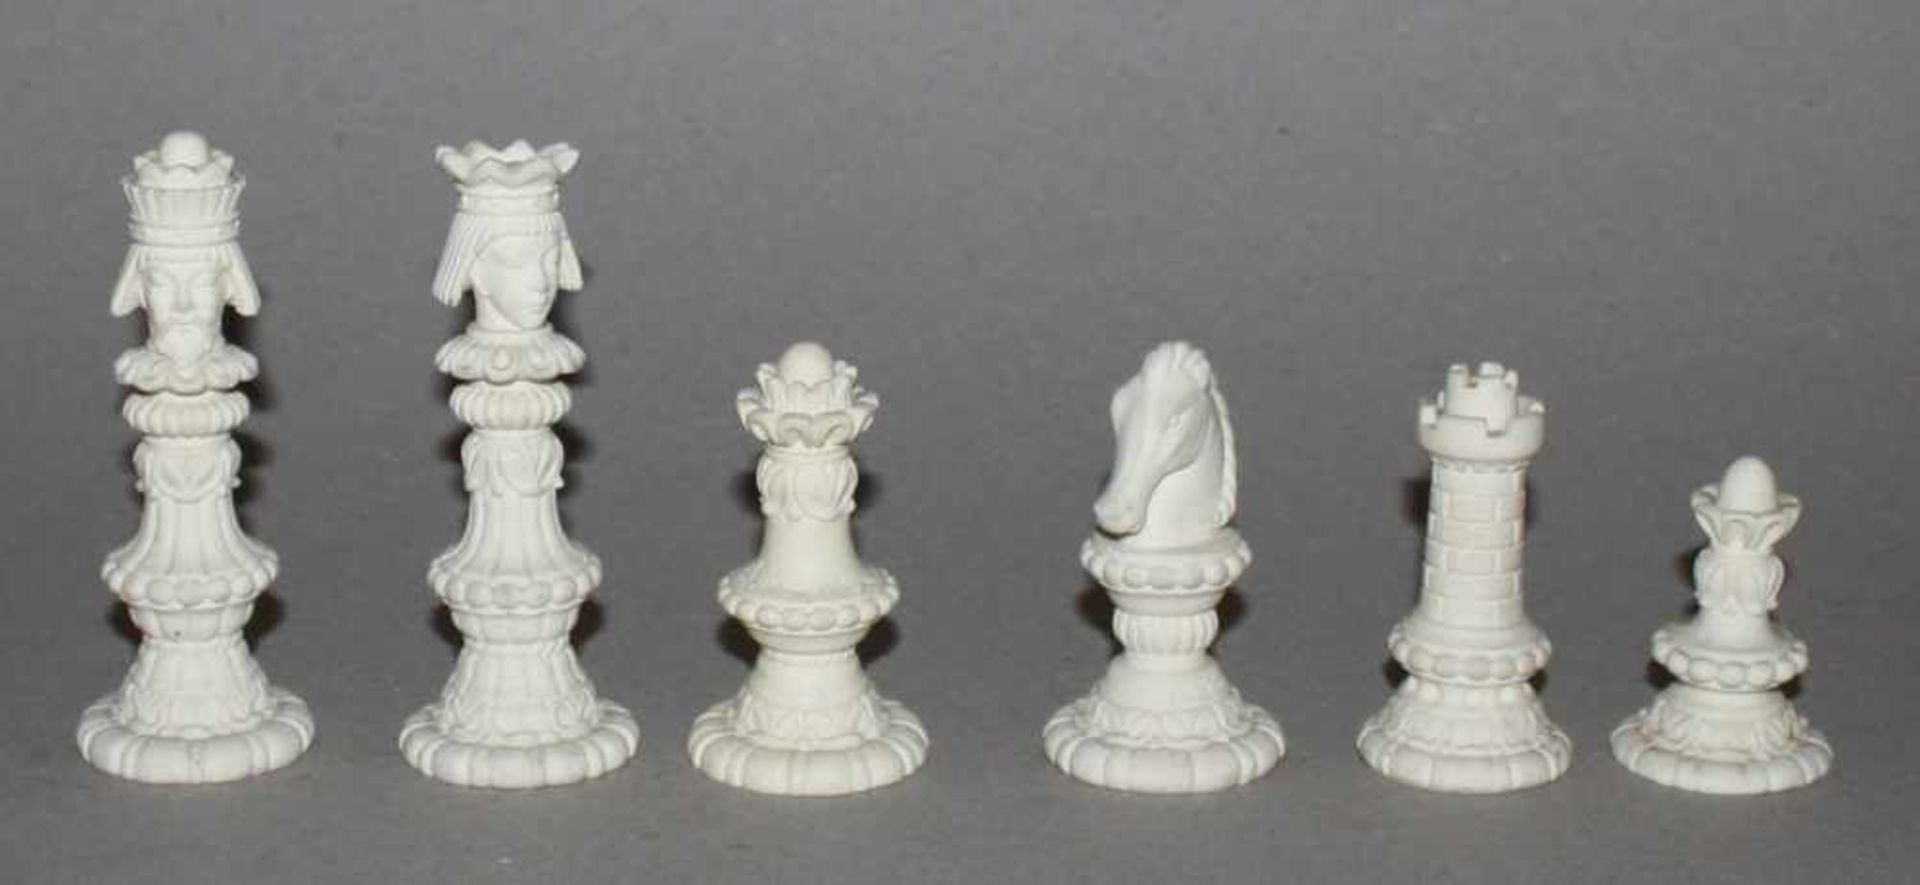 Europa. Italien. Alabasterschachspielmit historisierenden Figuren, nach einen Entwurf von Arnoldo - Bild 2 aus 3